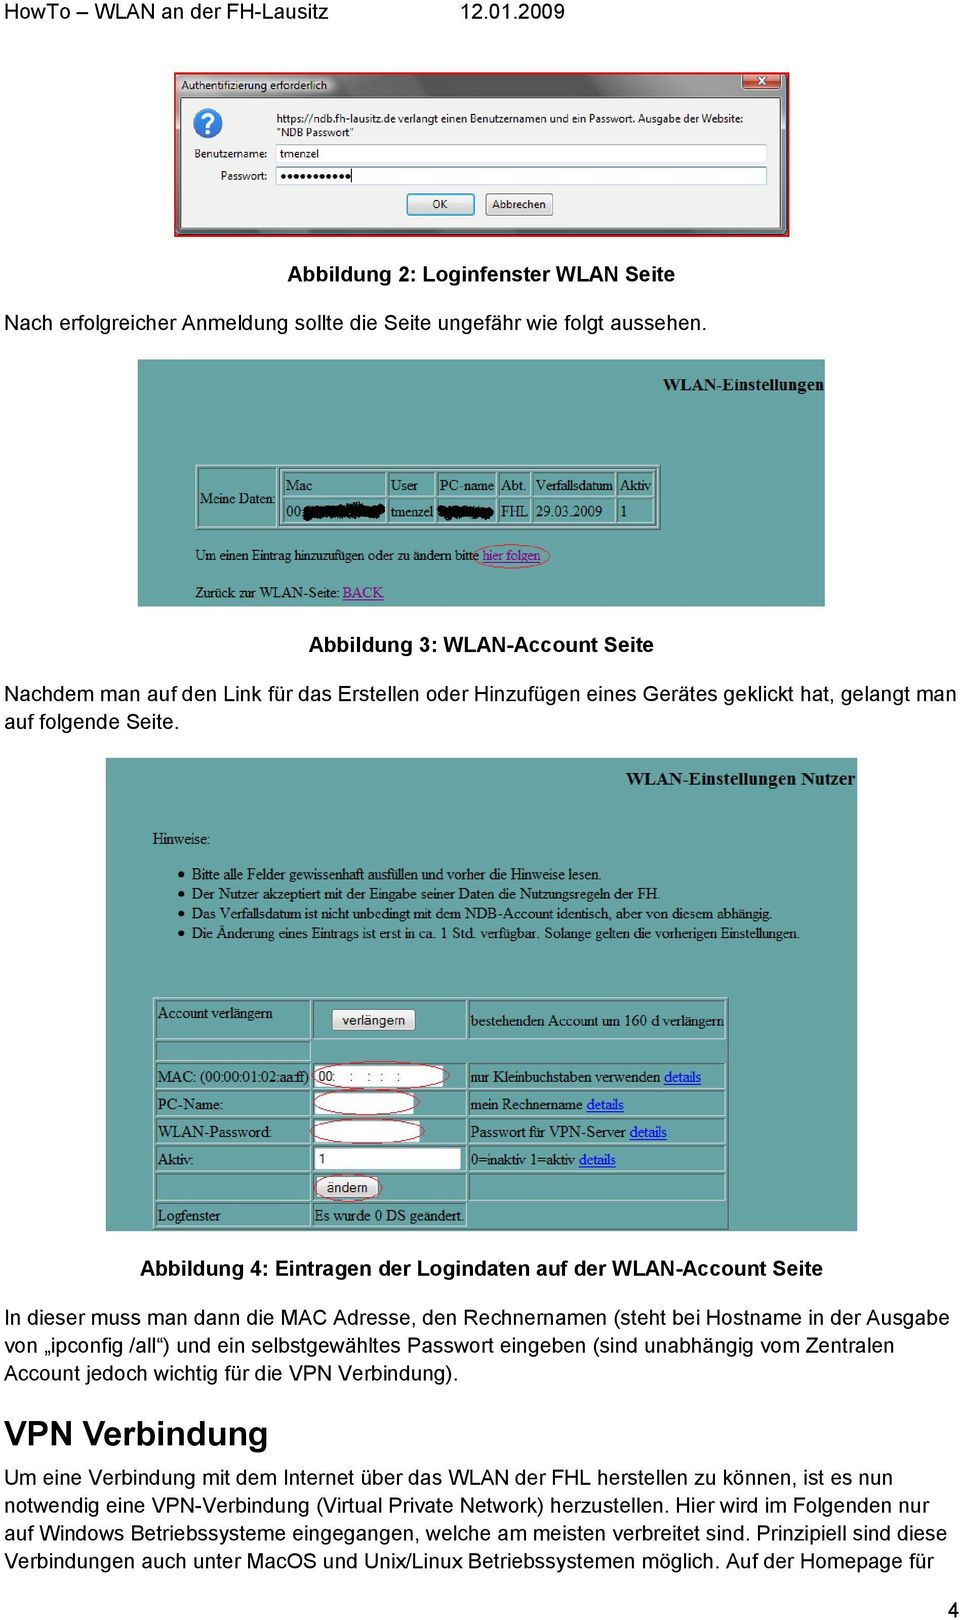 Abbildung 4: Eintragen der Logindaten auf der WLAN-Account Seite In dieser muss man dann die MAC Adresse, den Rechnernamen (steht bei Hostname in der Ausgabe von ipconfig /all ) und ein